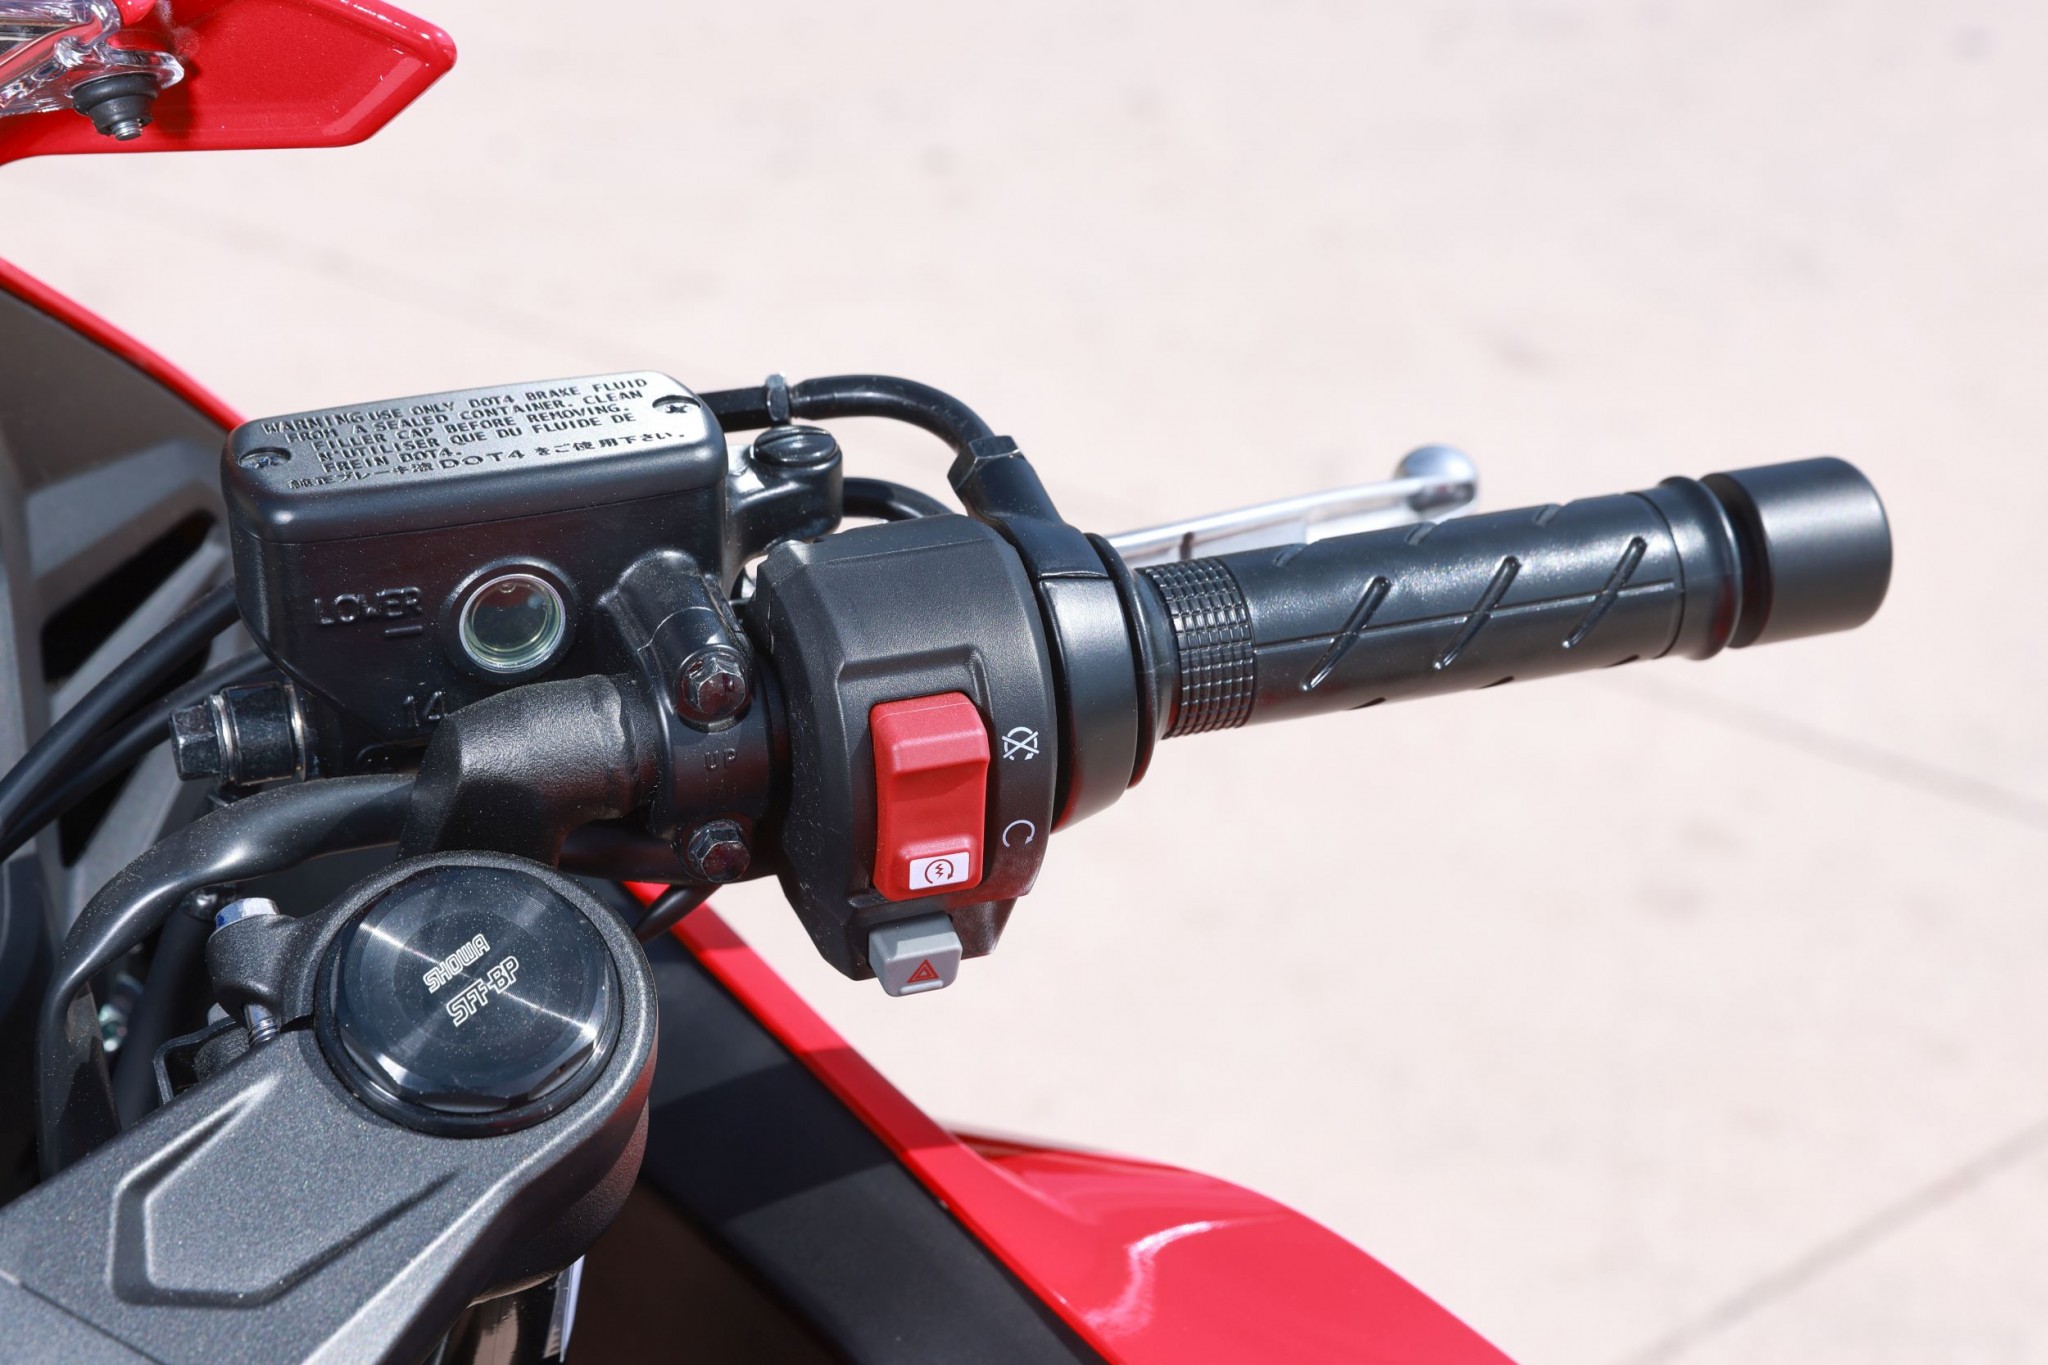 Test elektronske kvačila Honda CBR650R 2024

Honda je nedavno predstavila novu verziju svog popularnog motocikla CBR650R, koji sada dolazi sa elektronskim kvačilom, poznatim kao E-Clutch. Ova inovacija obećava da će olakšati vožnju omogućavajući vozačima da menjaju brzine bez potrebe za ručnim korišćenjem kvačila. 

Elektronsko kvačilo funkcioniše tako što automatski reguliše pritisak potreban za aktiviranje kvačila, što omogućava glatke promene brzina bez prekida u isporuci snage. Ovo je posebno korisno pri vožnji u gradu, gde česte promene brzina mogu biti naporne i otežavaju koncentraciju na saobraćaj.

Testiranje ovog sistema pokazalo je da E-Clutch ne samo da olakšava upravljanje motociklom, već i povećava sigurnost vožnje. Vozači mogu da se fokusiraju na okolinu bez brige o mehaničkim aspektima vožnje, što je posebno važno za manje iskusne vozače.

Honda CBR650R sa elektronskim kvačilom biće dostupna na tržištu od 2024. godine i očekuje se da će privući veliki broj kupaca, kako iskusnih tako i onih koji tek ulaze u svet motociklizma. Ovaj model predstavlja značajan korak napred u tehnologiji motocikala i potencijalno postavlja nove standarde u industriji. - Слика 34